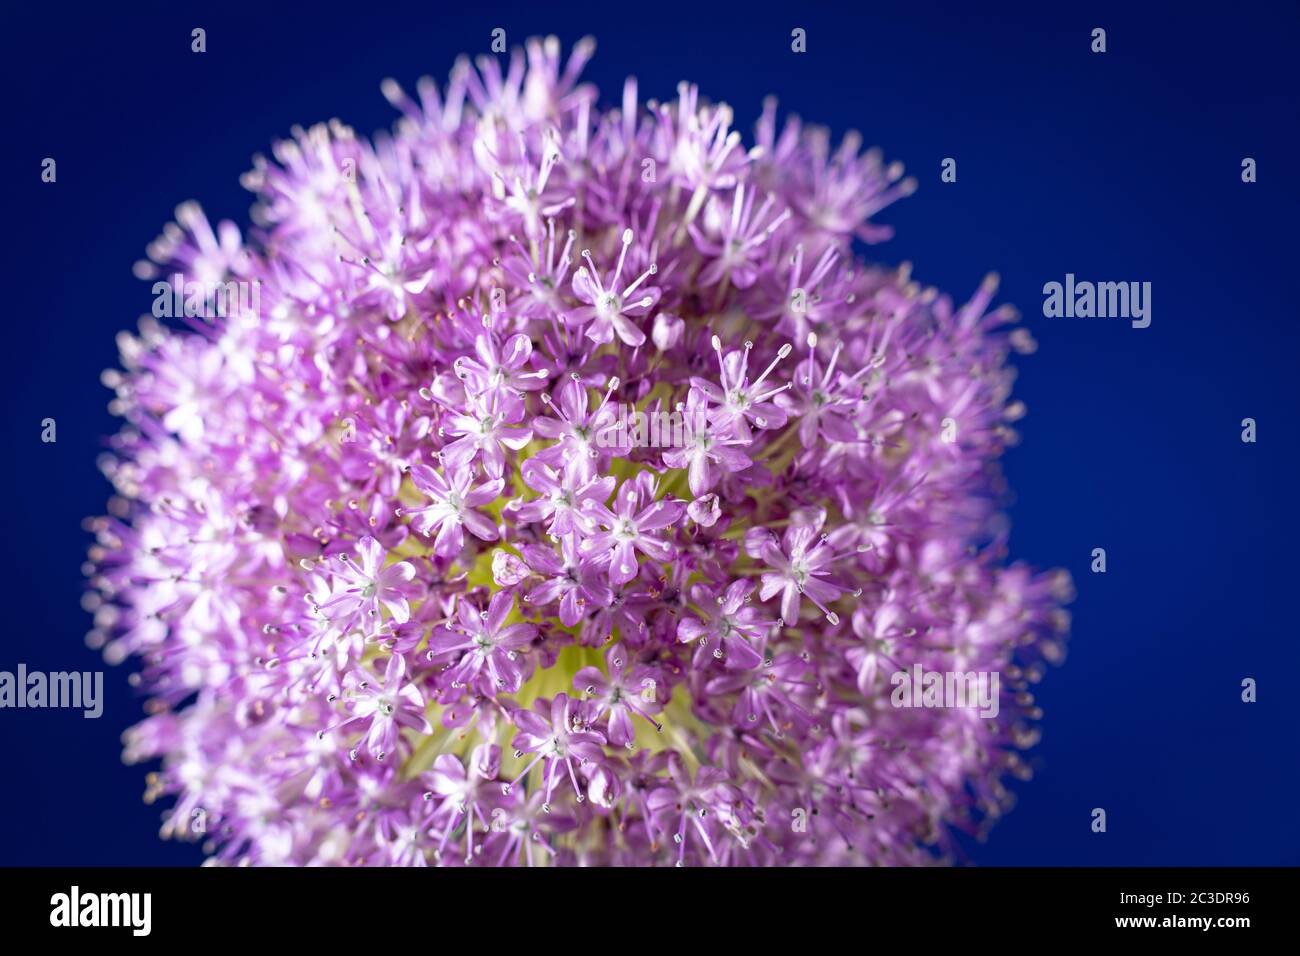 Ein einziger Allium, der in einem Garten in Warwickshire, England, Großbritannien angebaut wird. Allium ist eine Gattung von monokotyledonous blühenden Pflanzen, die Hunderte von Arten umfasst, einschließlich der kultivierten Zwiebel, Knoblauch, Frühlingszwiebel, Schalotte, Lauch und Schnittlauch. Der generische Name Allium ist das lateinische Wort für Knoblauch, und die Art der Gattung ist Allium sativum, was "kultivierter Knoblauch" bedeutet. Stockfoto